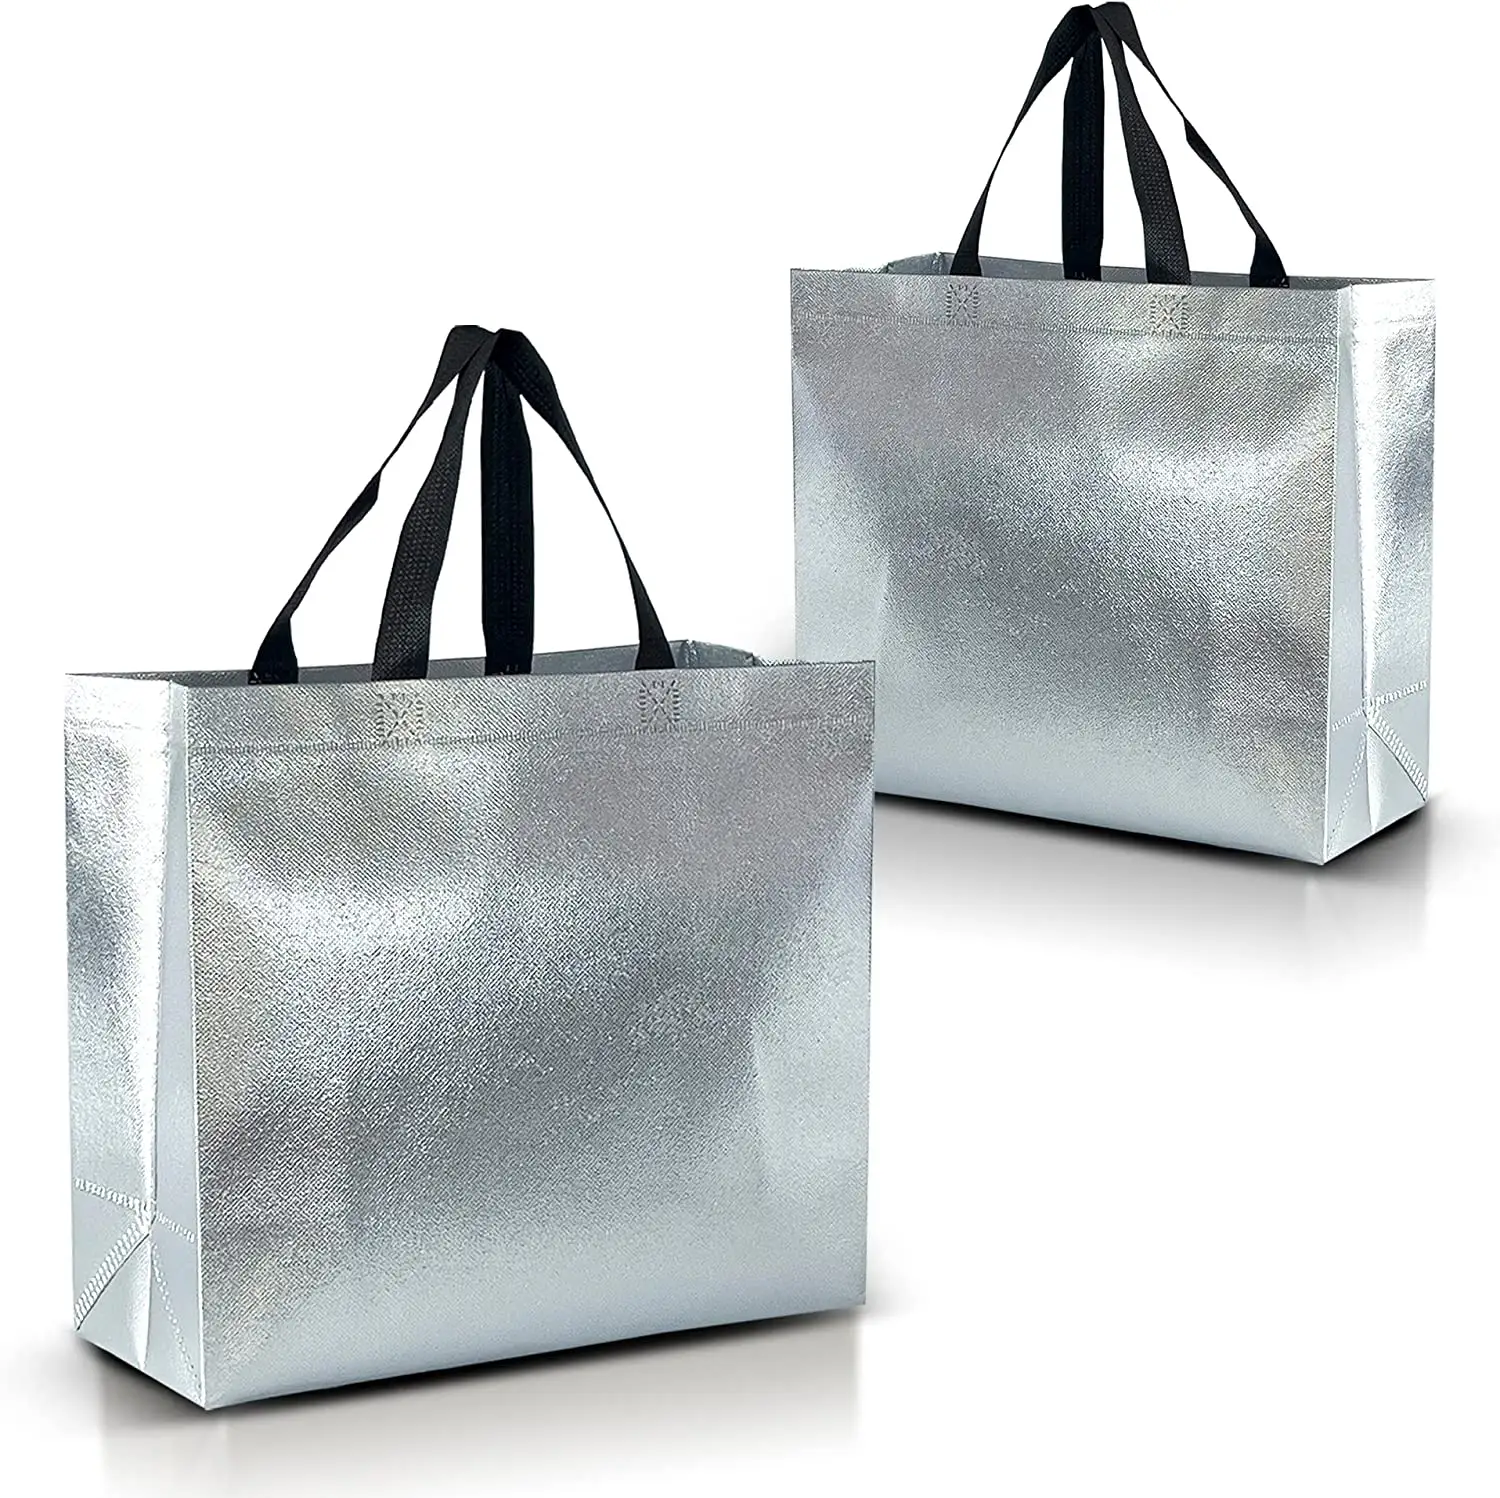 Özel sıcak satış moda kadınlar alışveriş Tote katlanabilir kullanımlık gümüş metalik olmayan dokuma çanta ile sağlam kolu